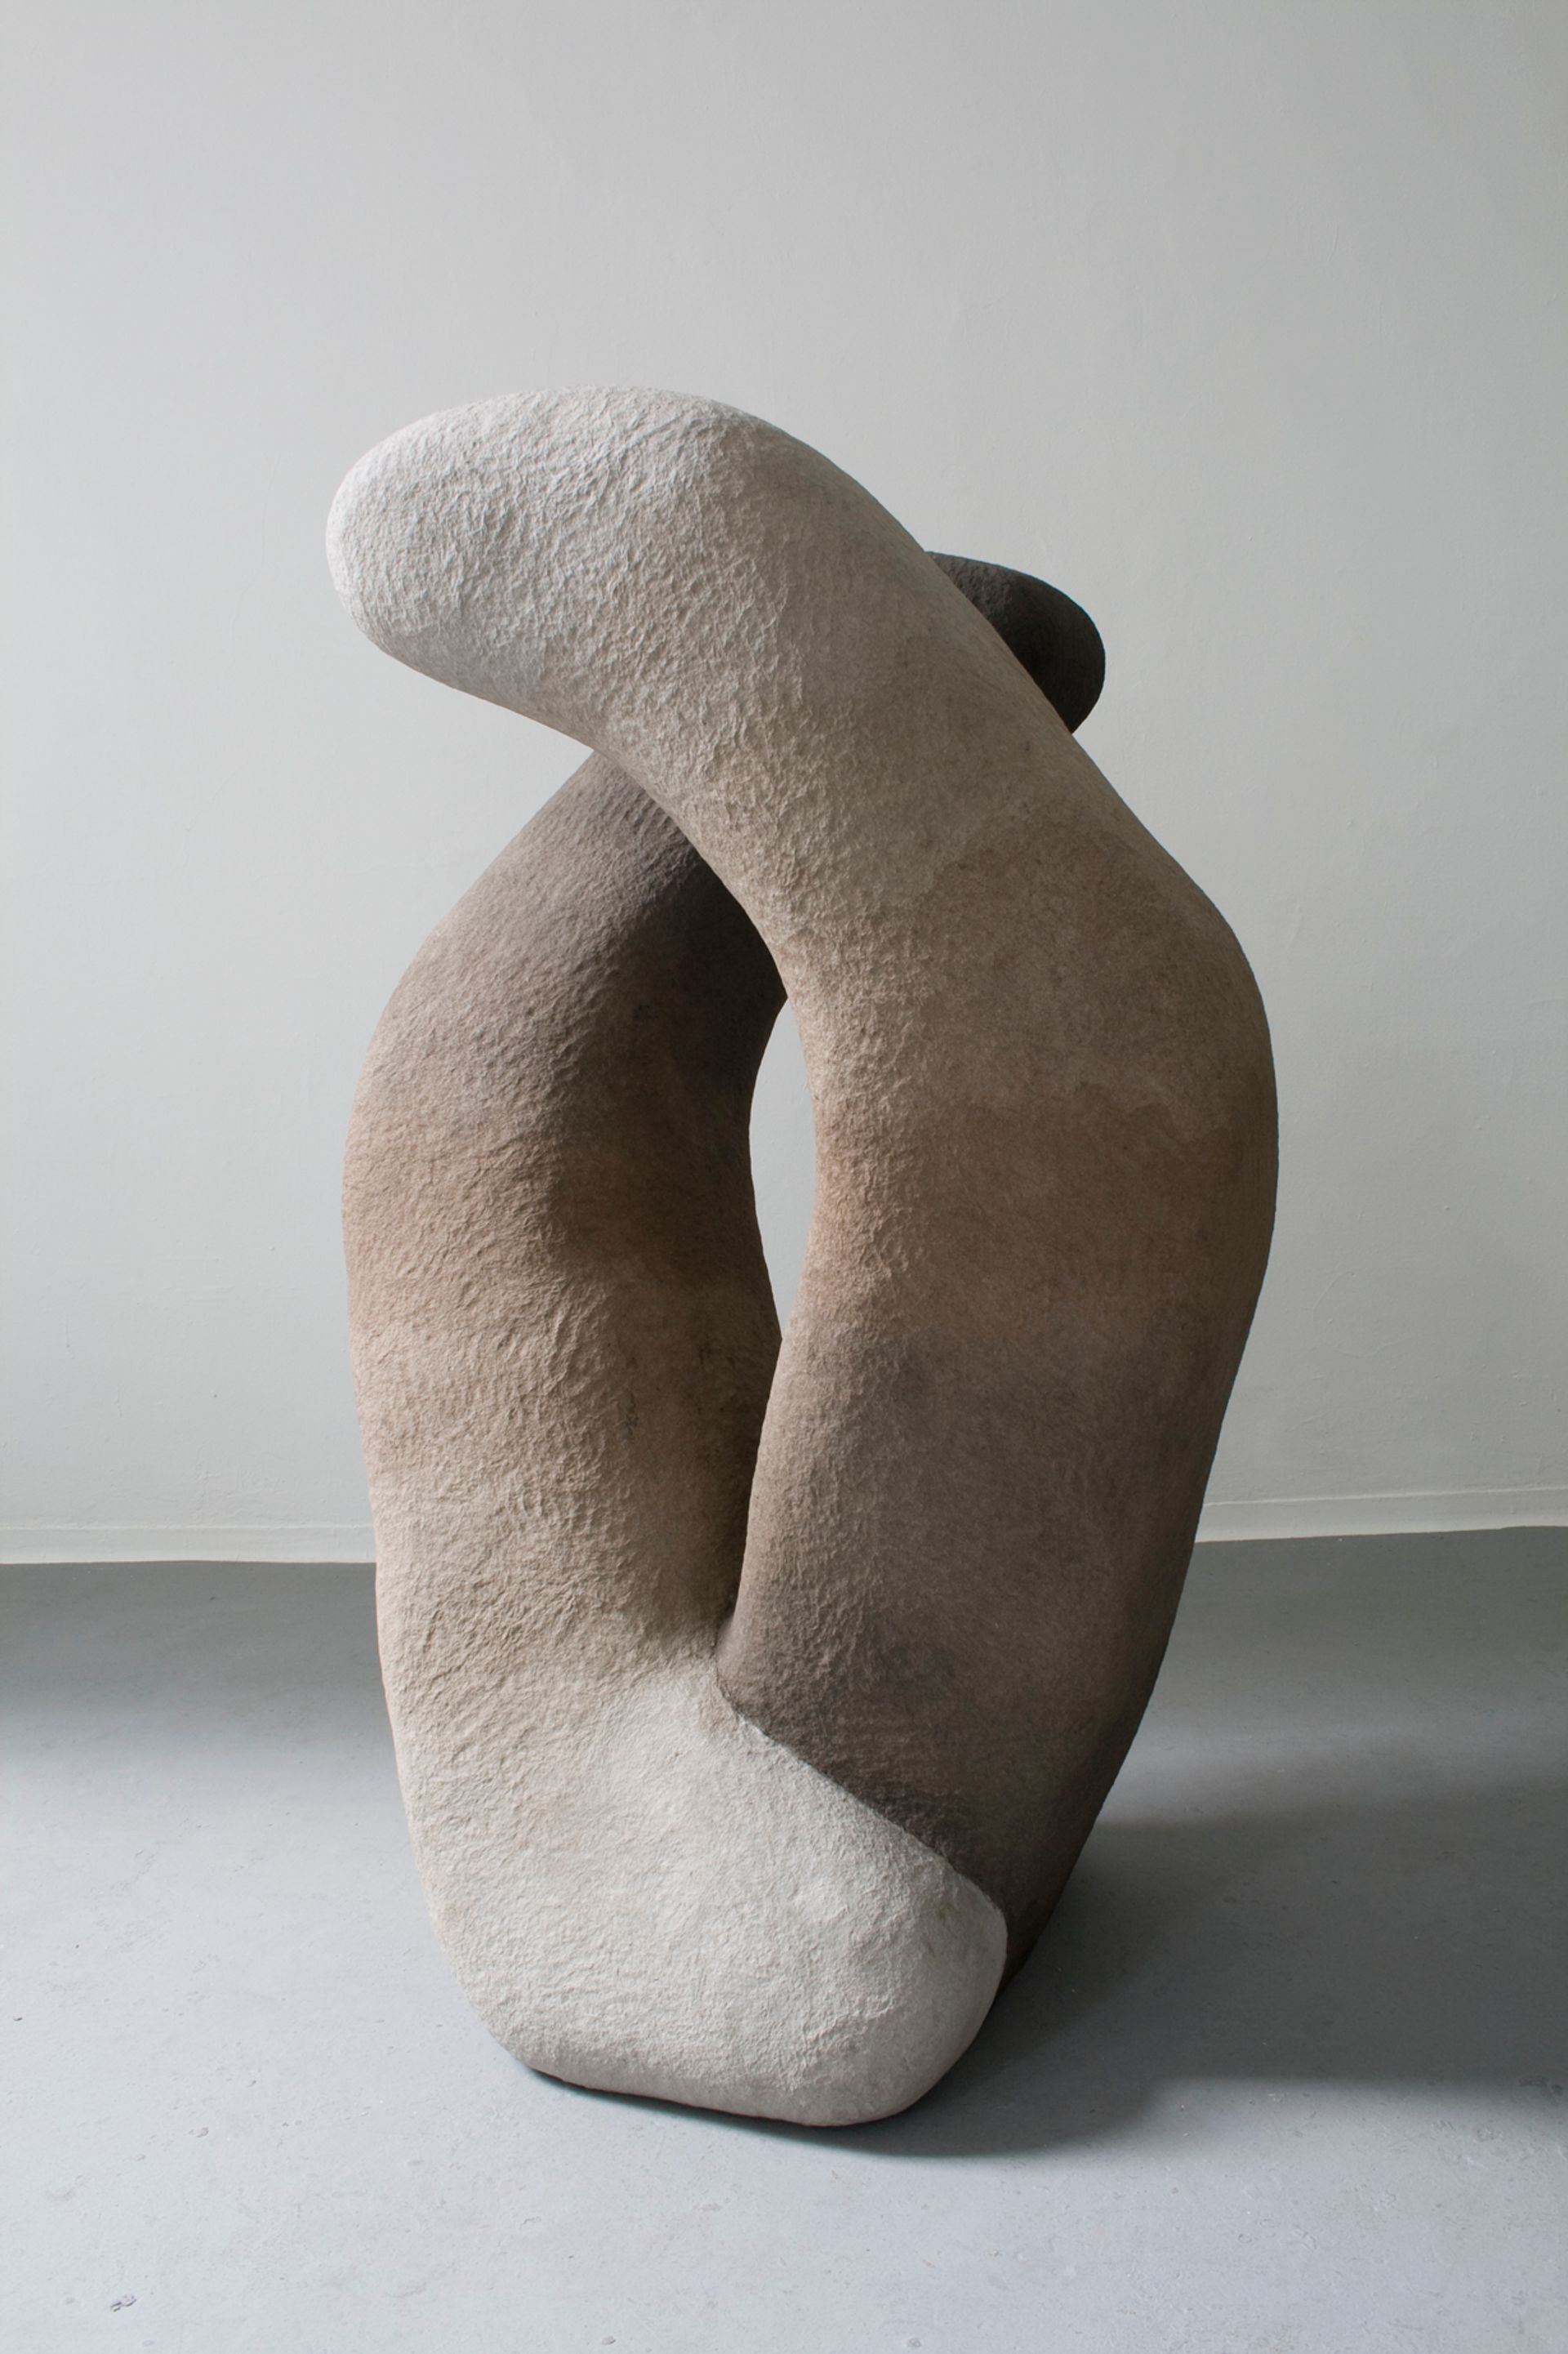 Ana Navas, Yin-Yang, 2014, styrofoam, papier mâché, pigment color, 153 × 93 × 70 cm